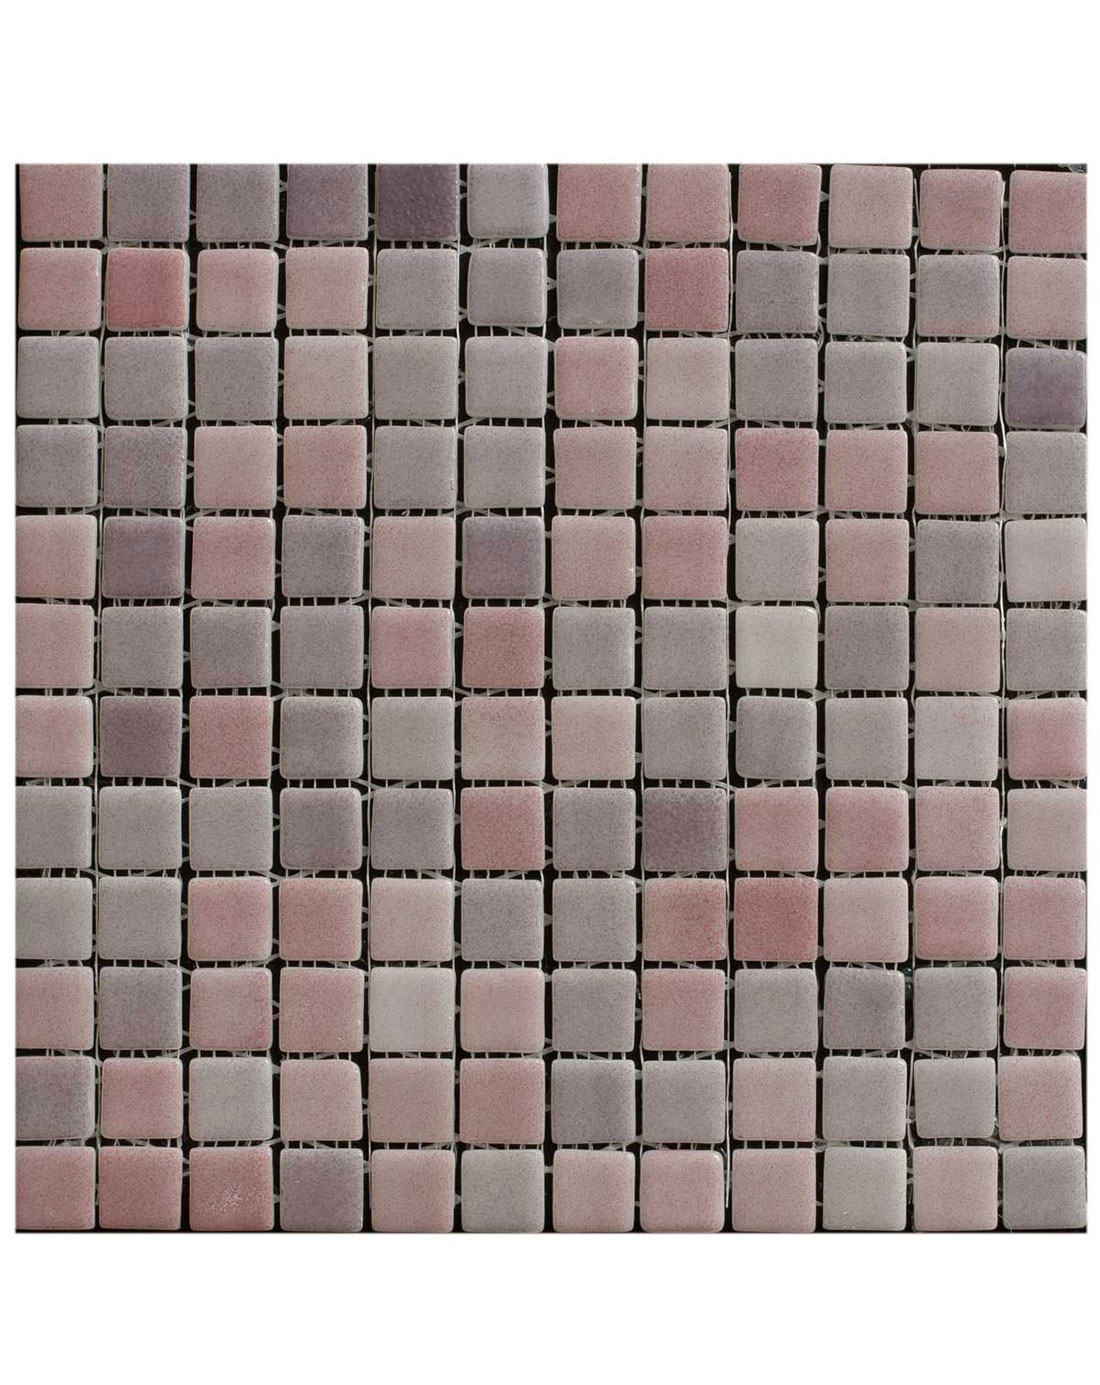 Lilac & Pink Mosaic Wall Tiles